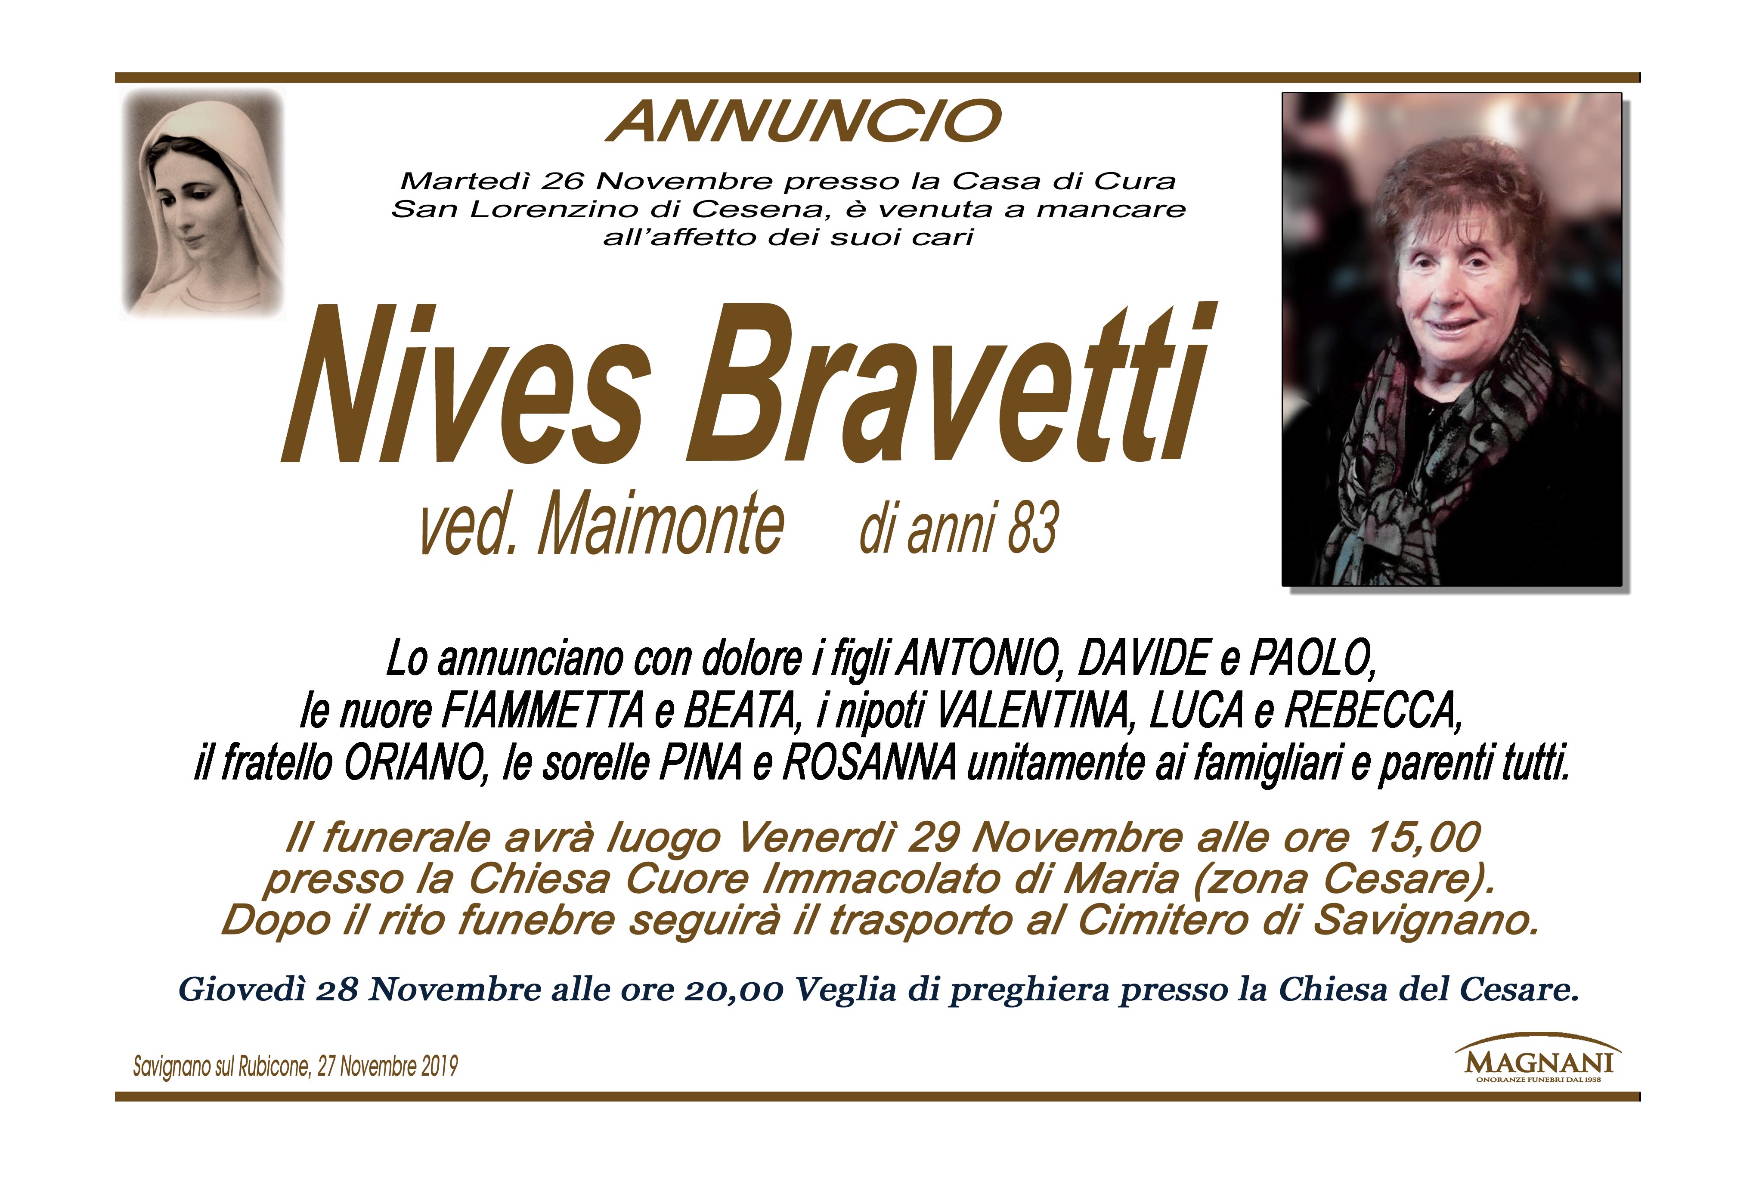 Nives Bravetti